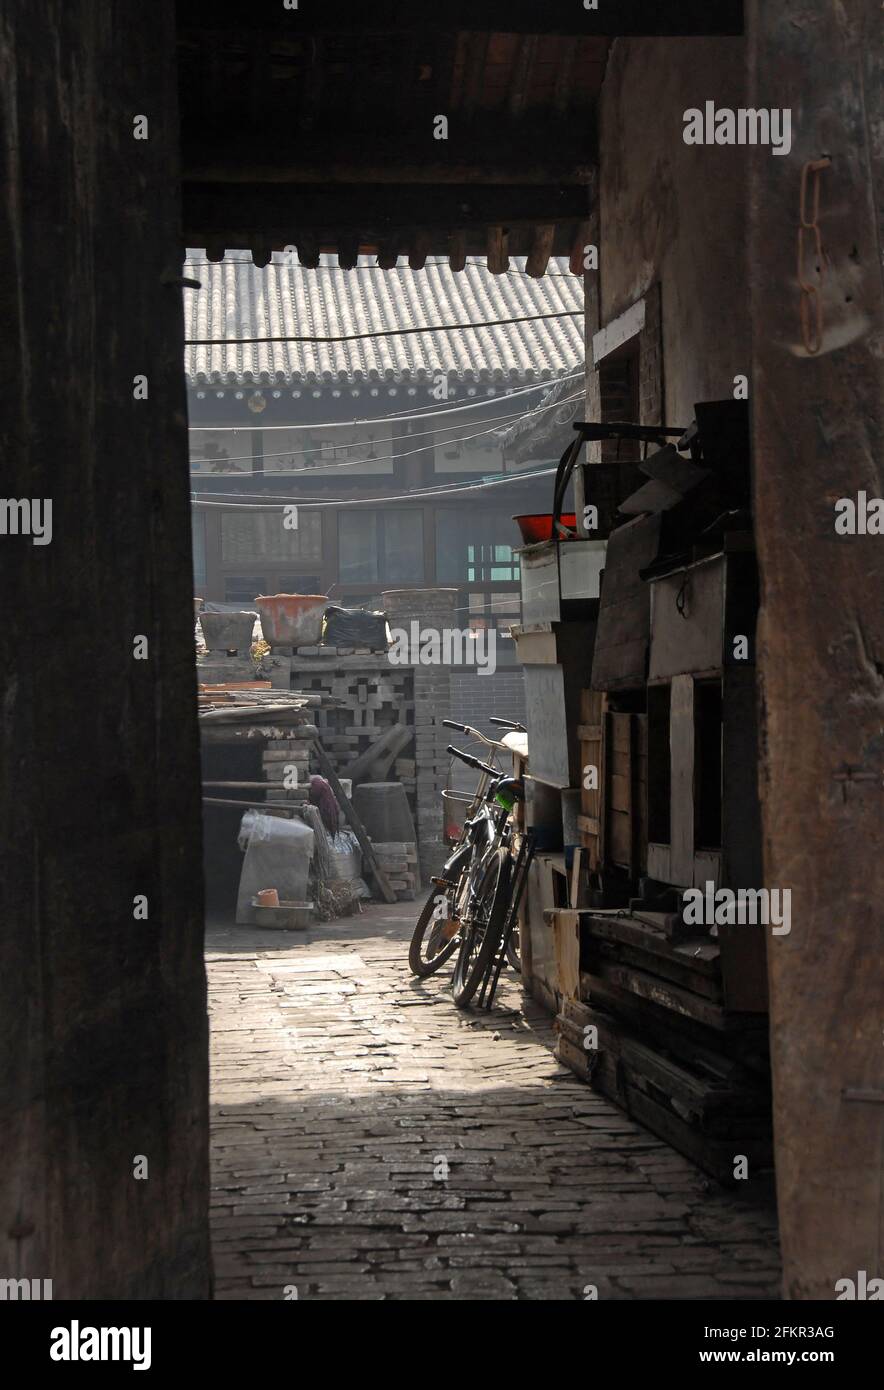 Pingyao dans la province du Shanxi, Chine : vue par une porte dans une allée et une cour avec des vélos Banque D'Images